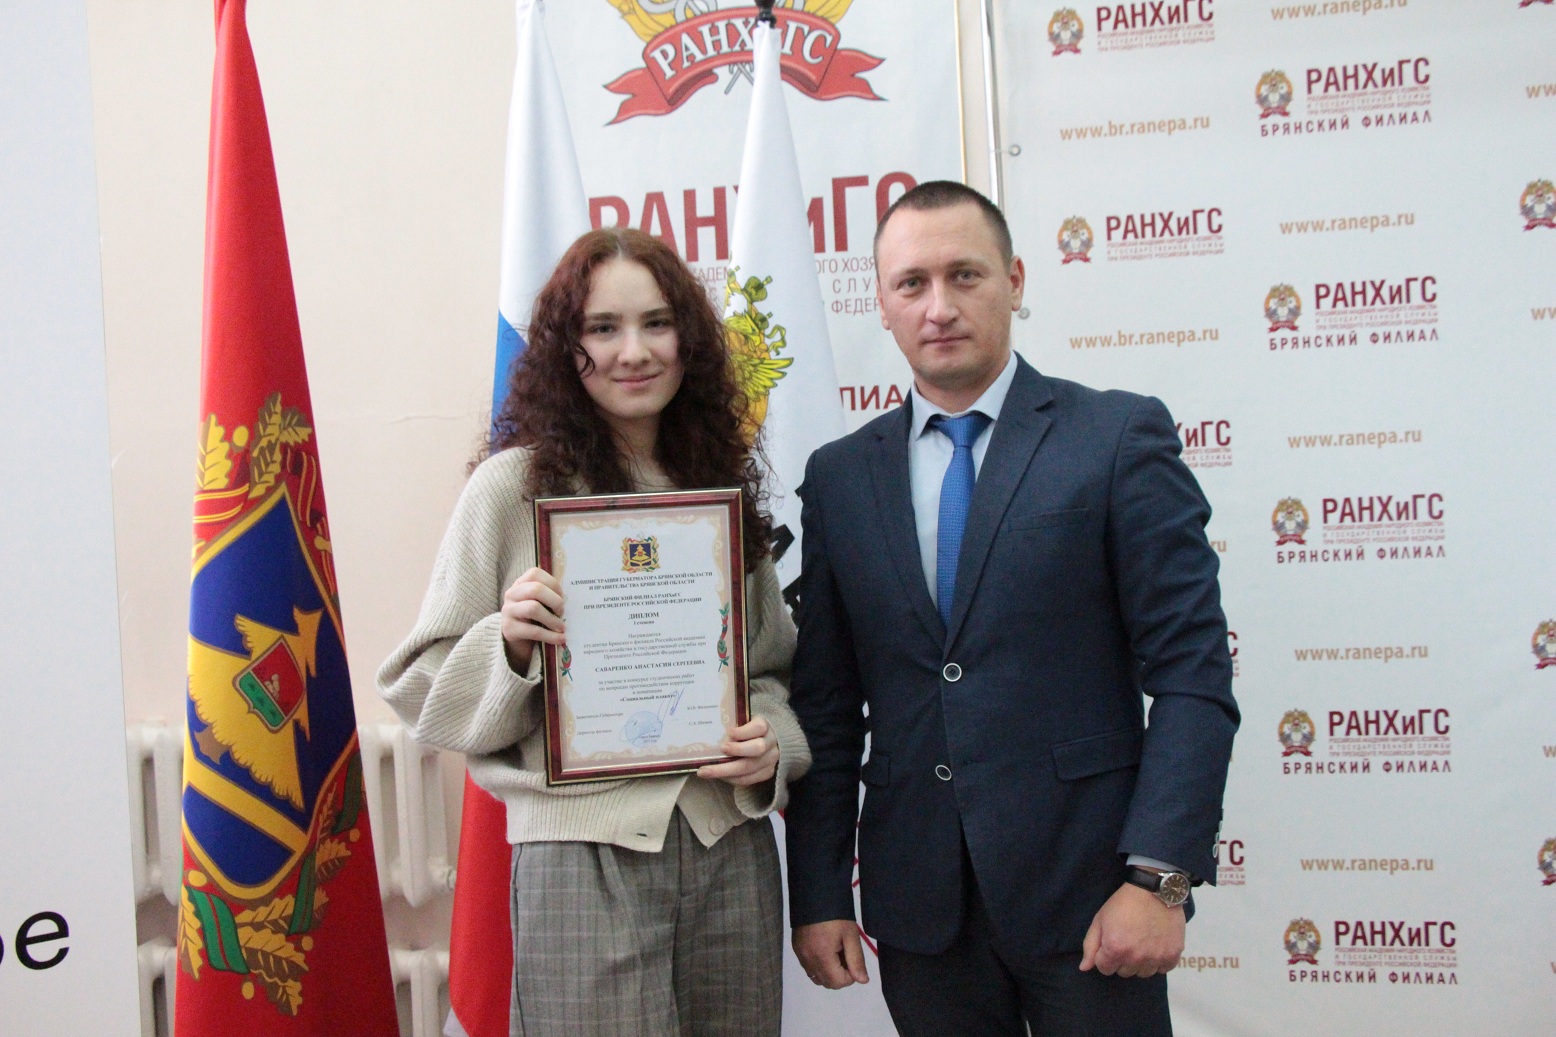 В Брянске студенты РАНХиГС победили в конкурсе антикоррупционных видеороликов и плакатов